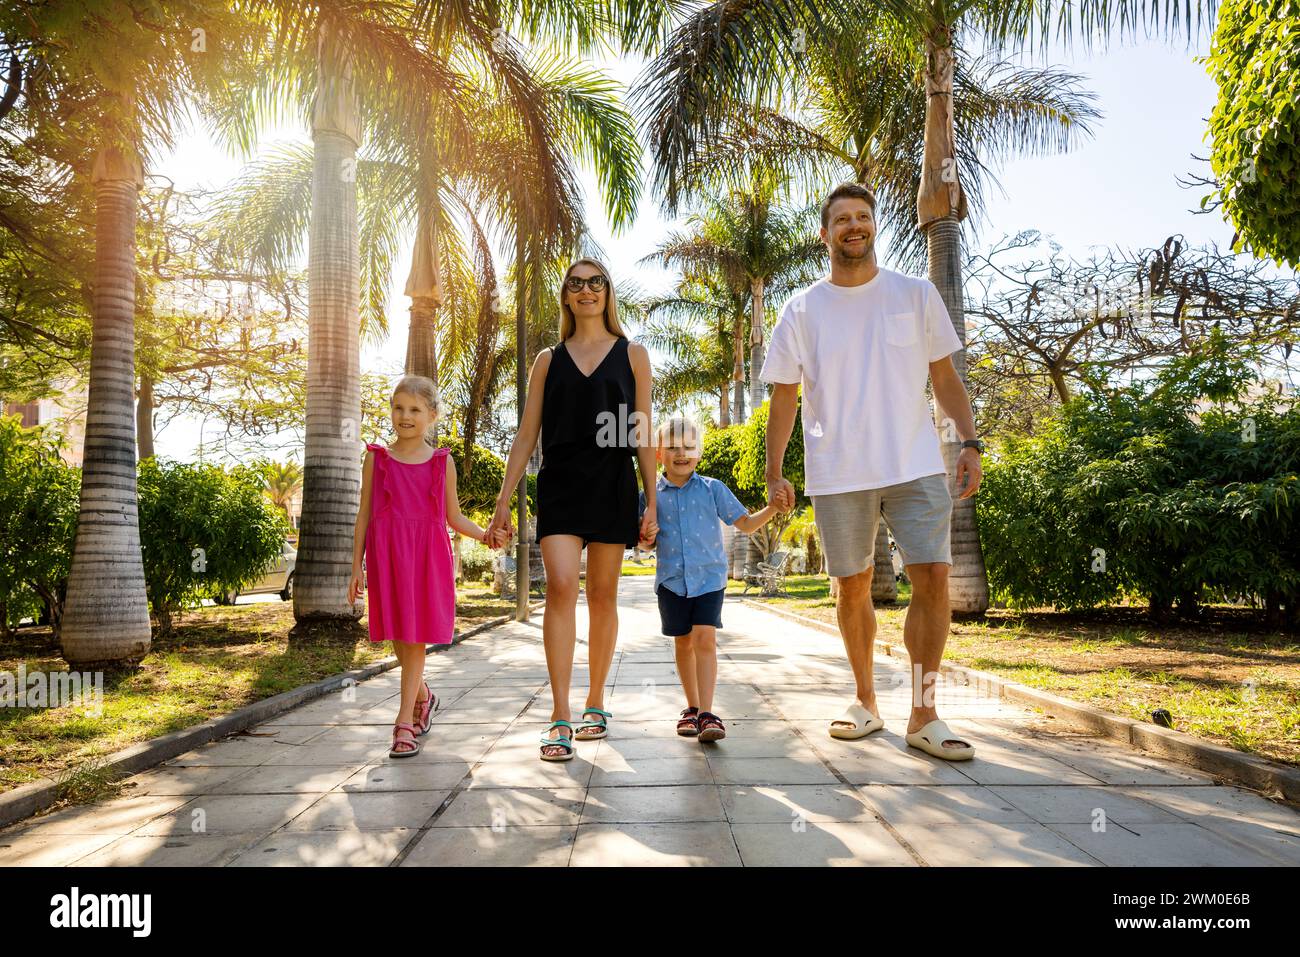 Glückliche Familie mit Kindern, die in einer Gasse in einem Palmenpark in Teneriffa, Spanien, spazieren gehen. Sommerurlaub Stockfoto